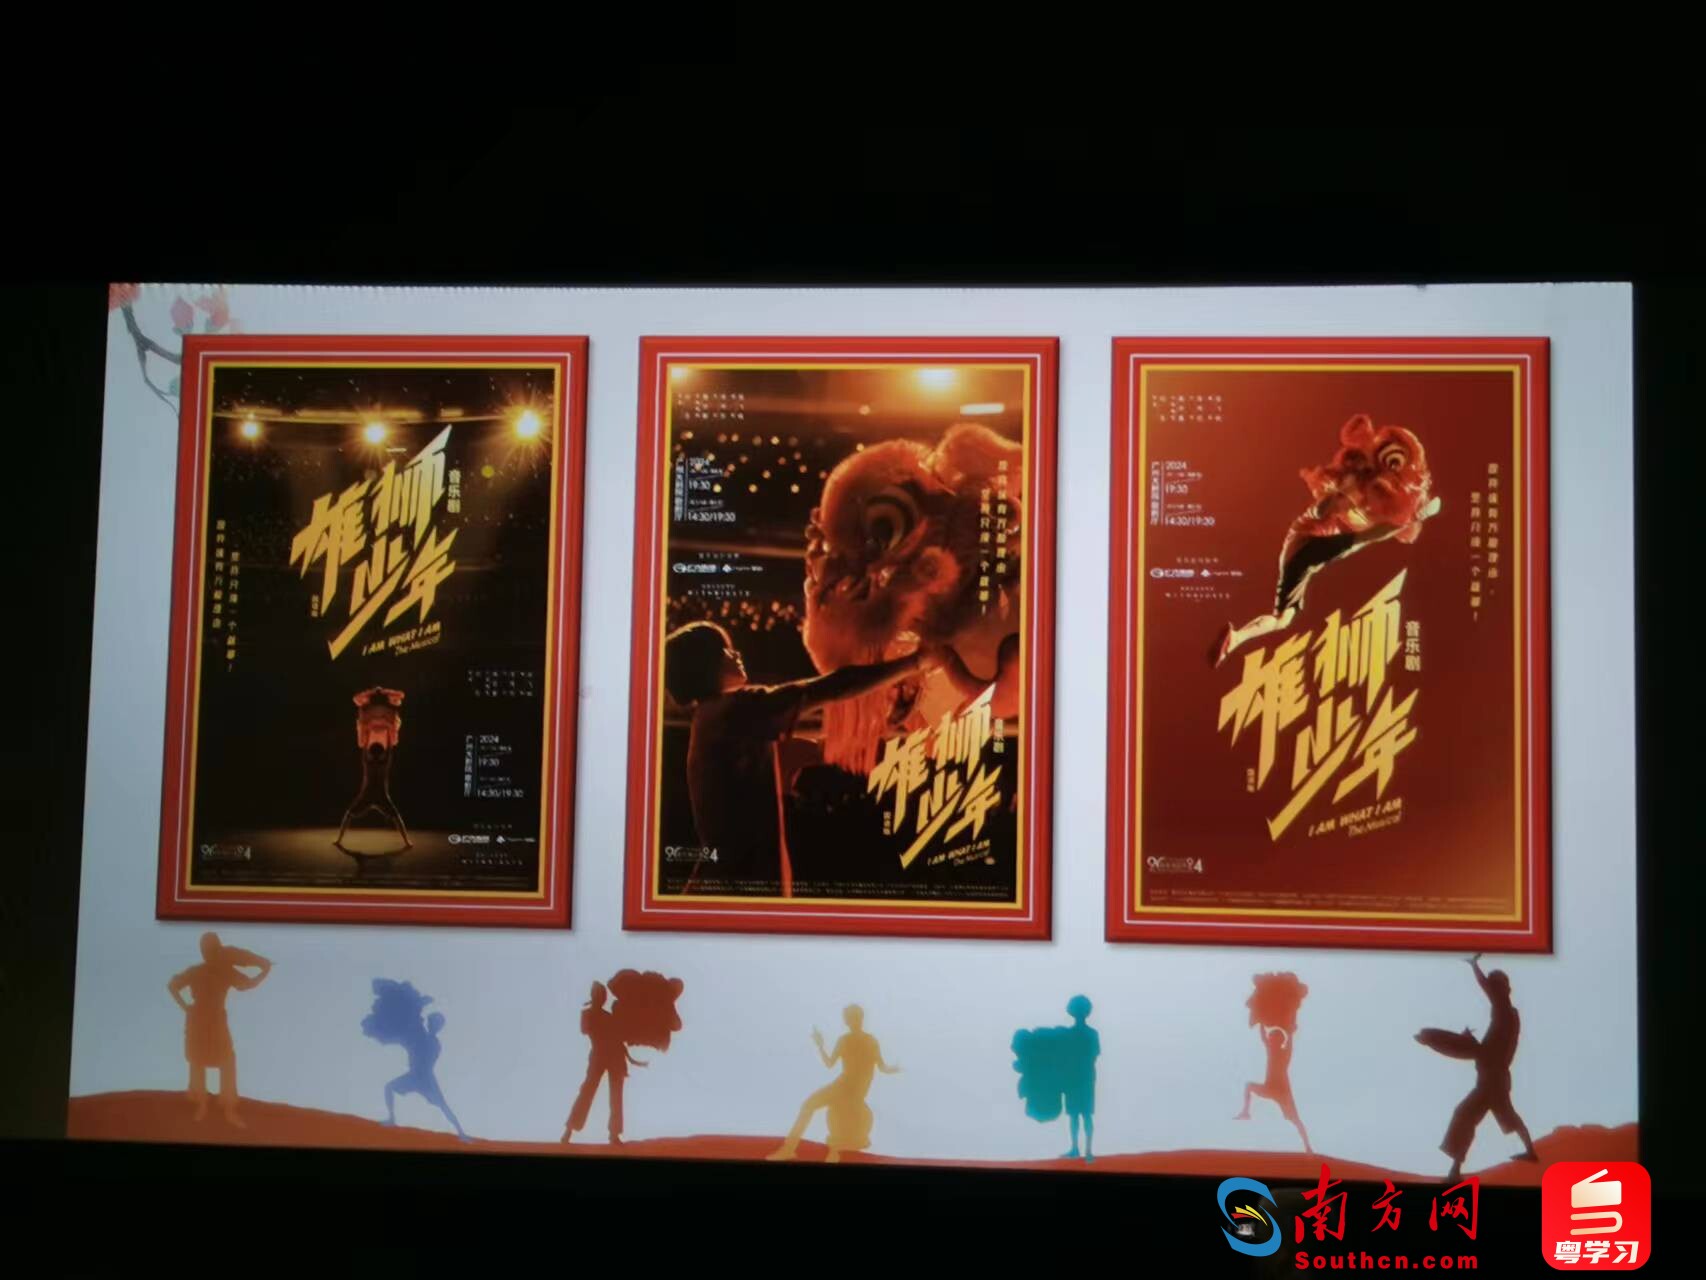 音乐剧《雄狮少年》国语版最新三款主视觉海报《少年的舞台》《少年与雄狮》和《飞跃吧少年》。